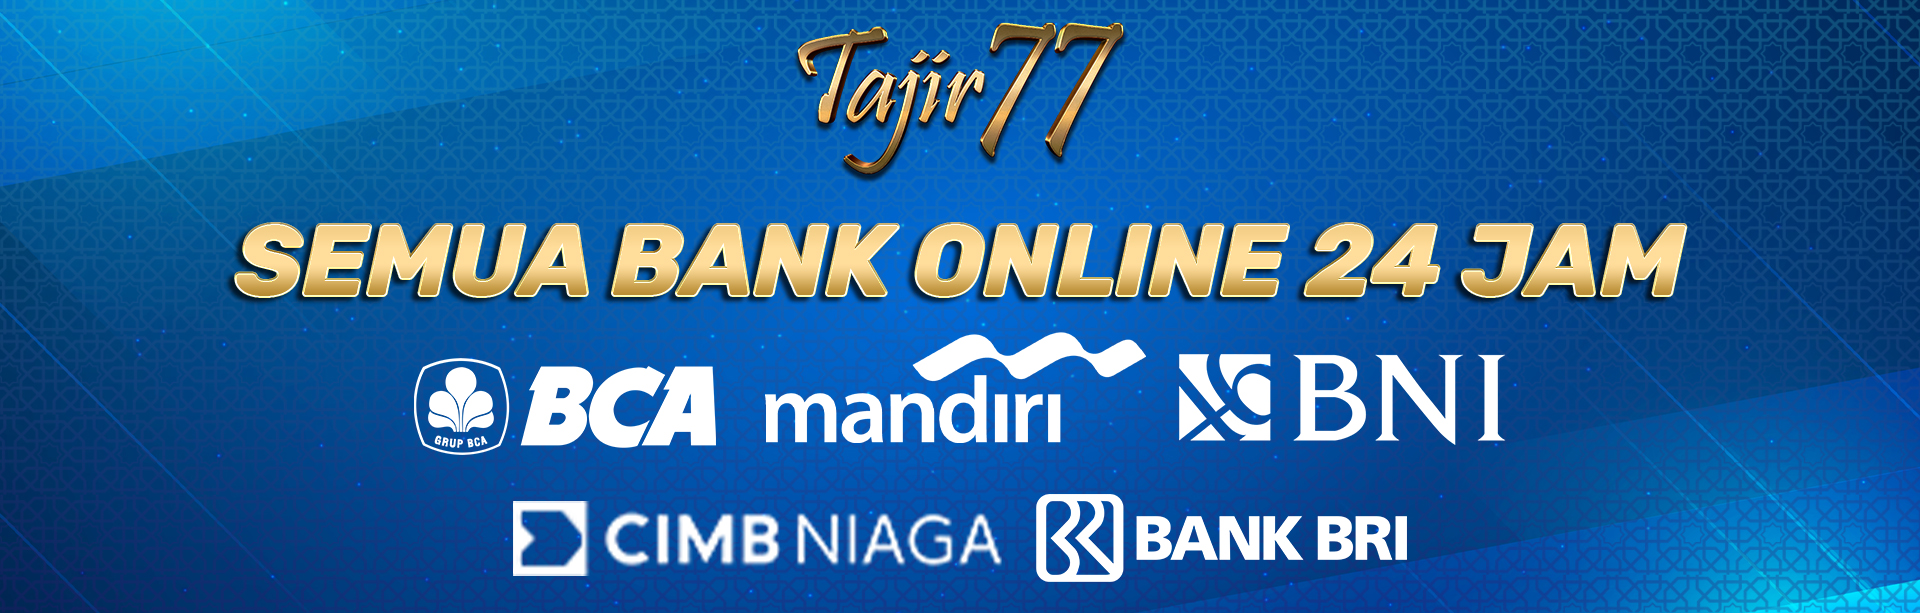 BANK ONLINE TAJIR77